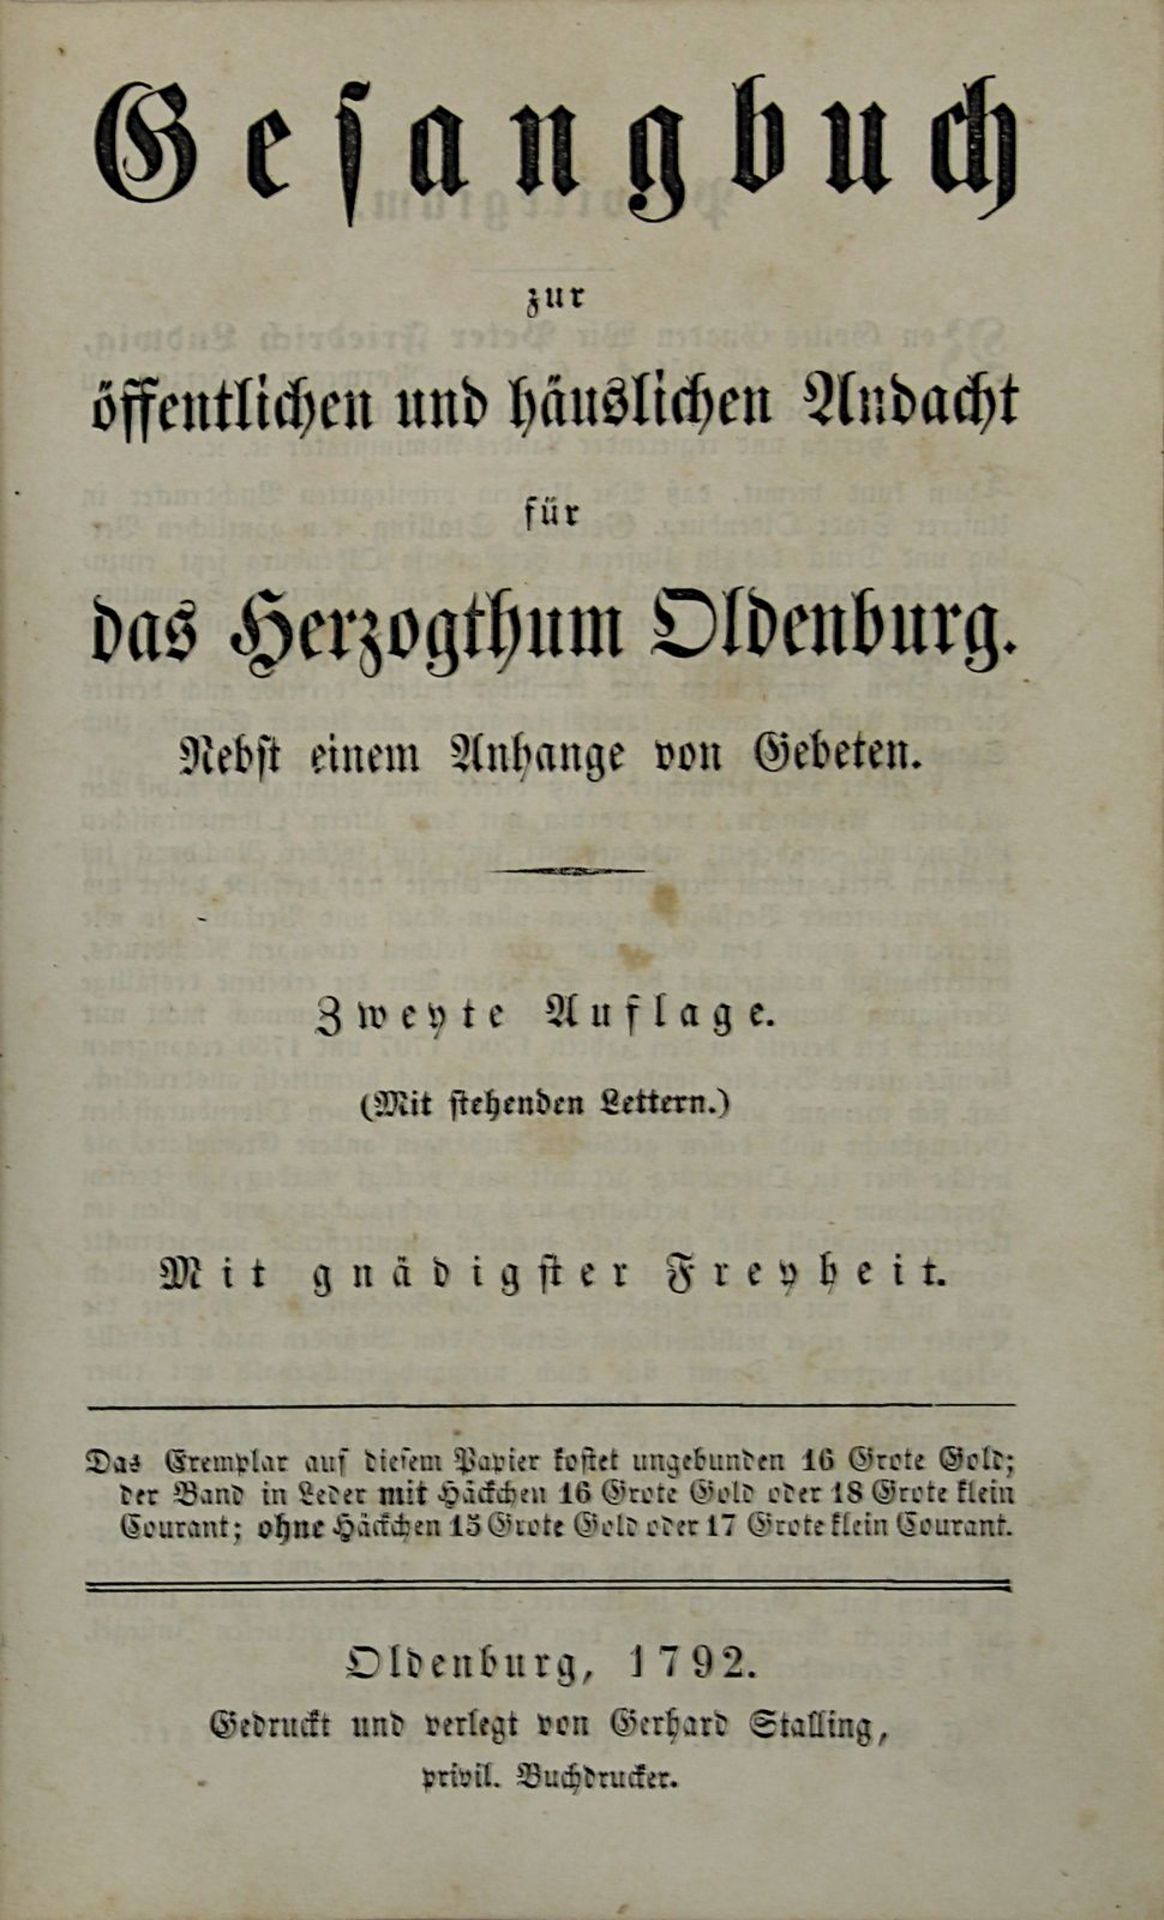 "Gesangbuch zur öffentlichen und häuslichen Andacht für das Herzogthum Oldenburg", Oldenburg 1792,